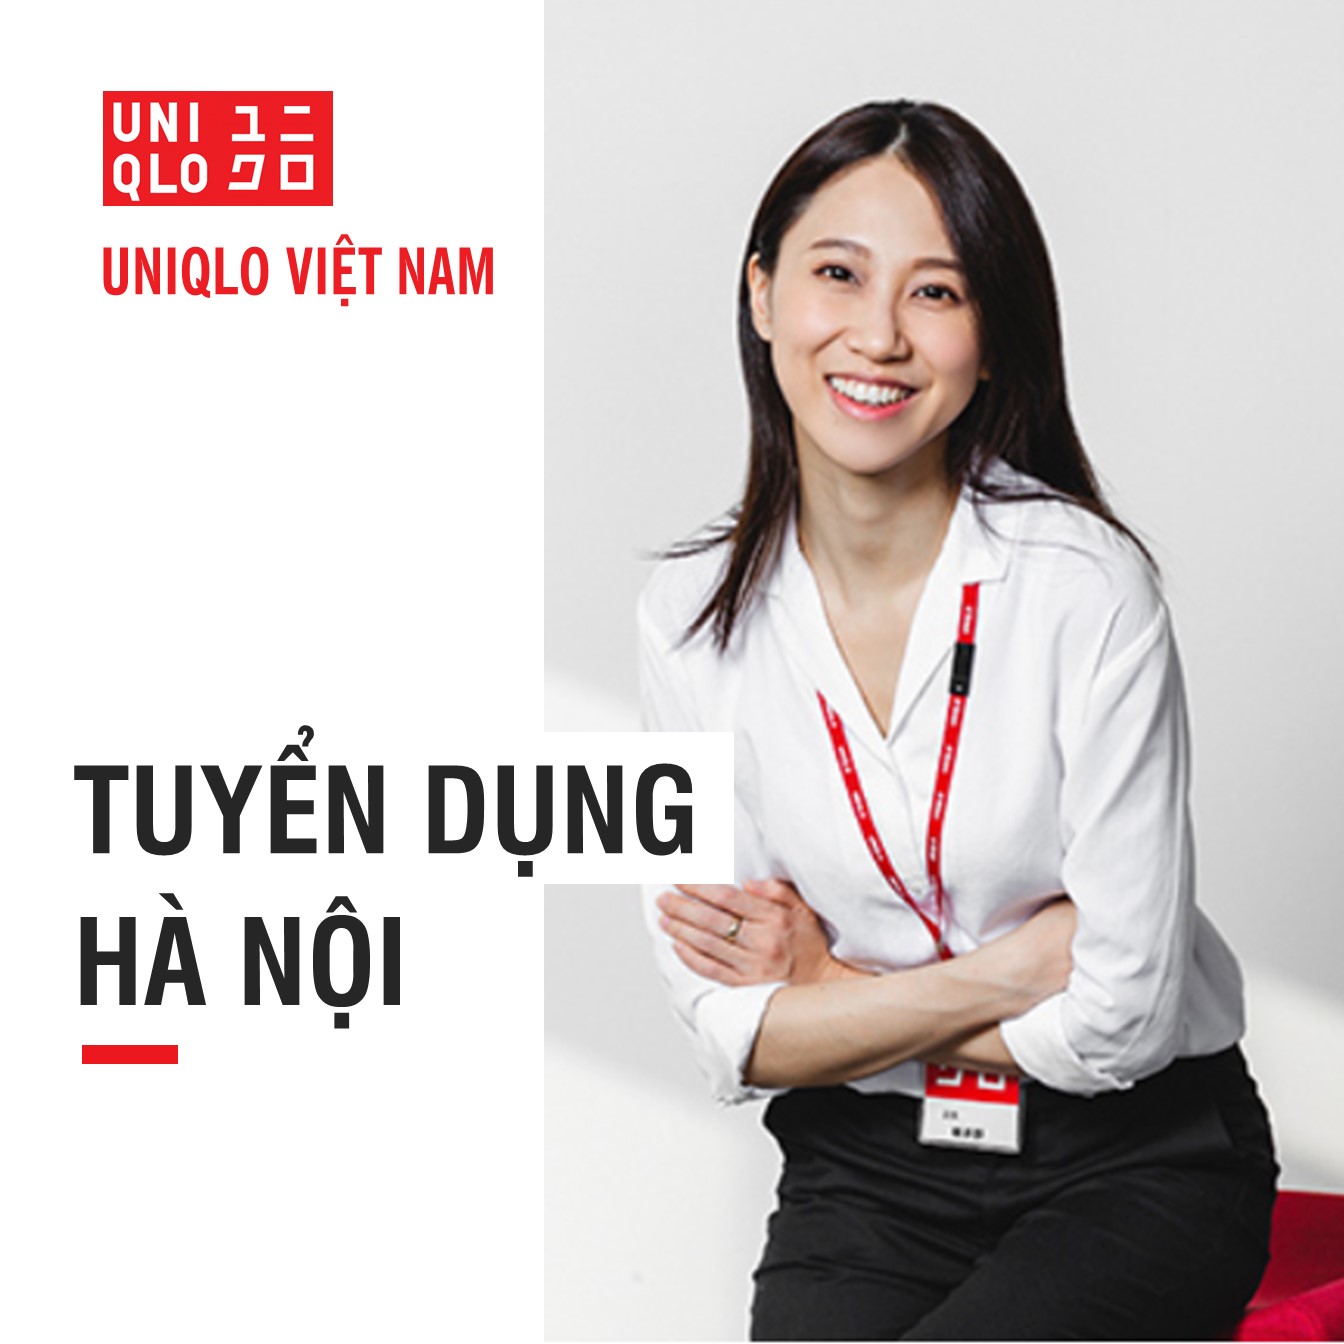 Uniqlo Vietnam  UNIQLO TUYỂN DỤNG CƠ HỘI TRỞ THÀNH NHÂN  Facebook